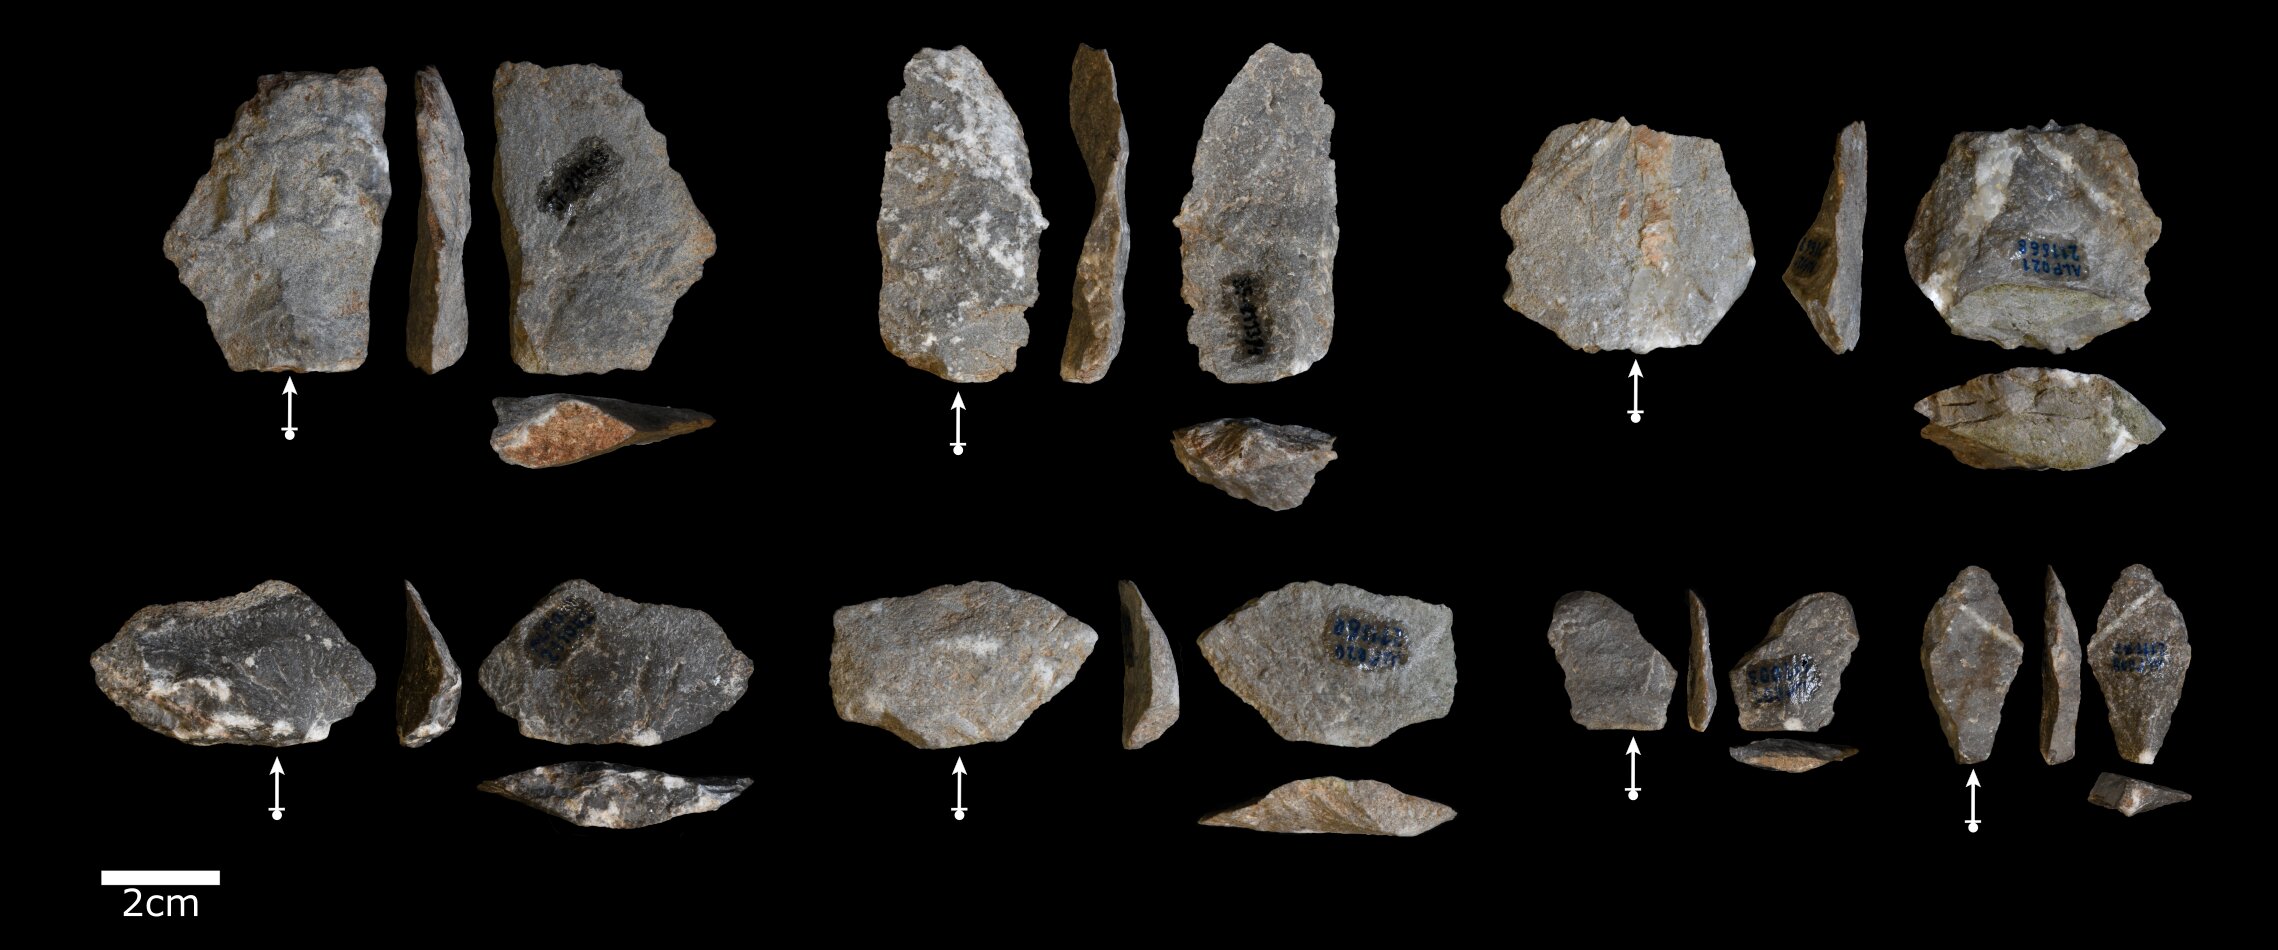 长尾猕猴无意中创造的石块碎片与早期人类制作的石器很相似